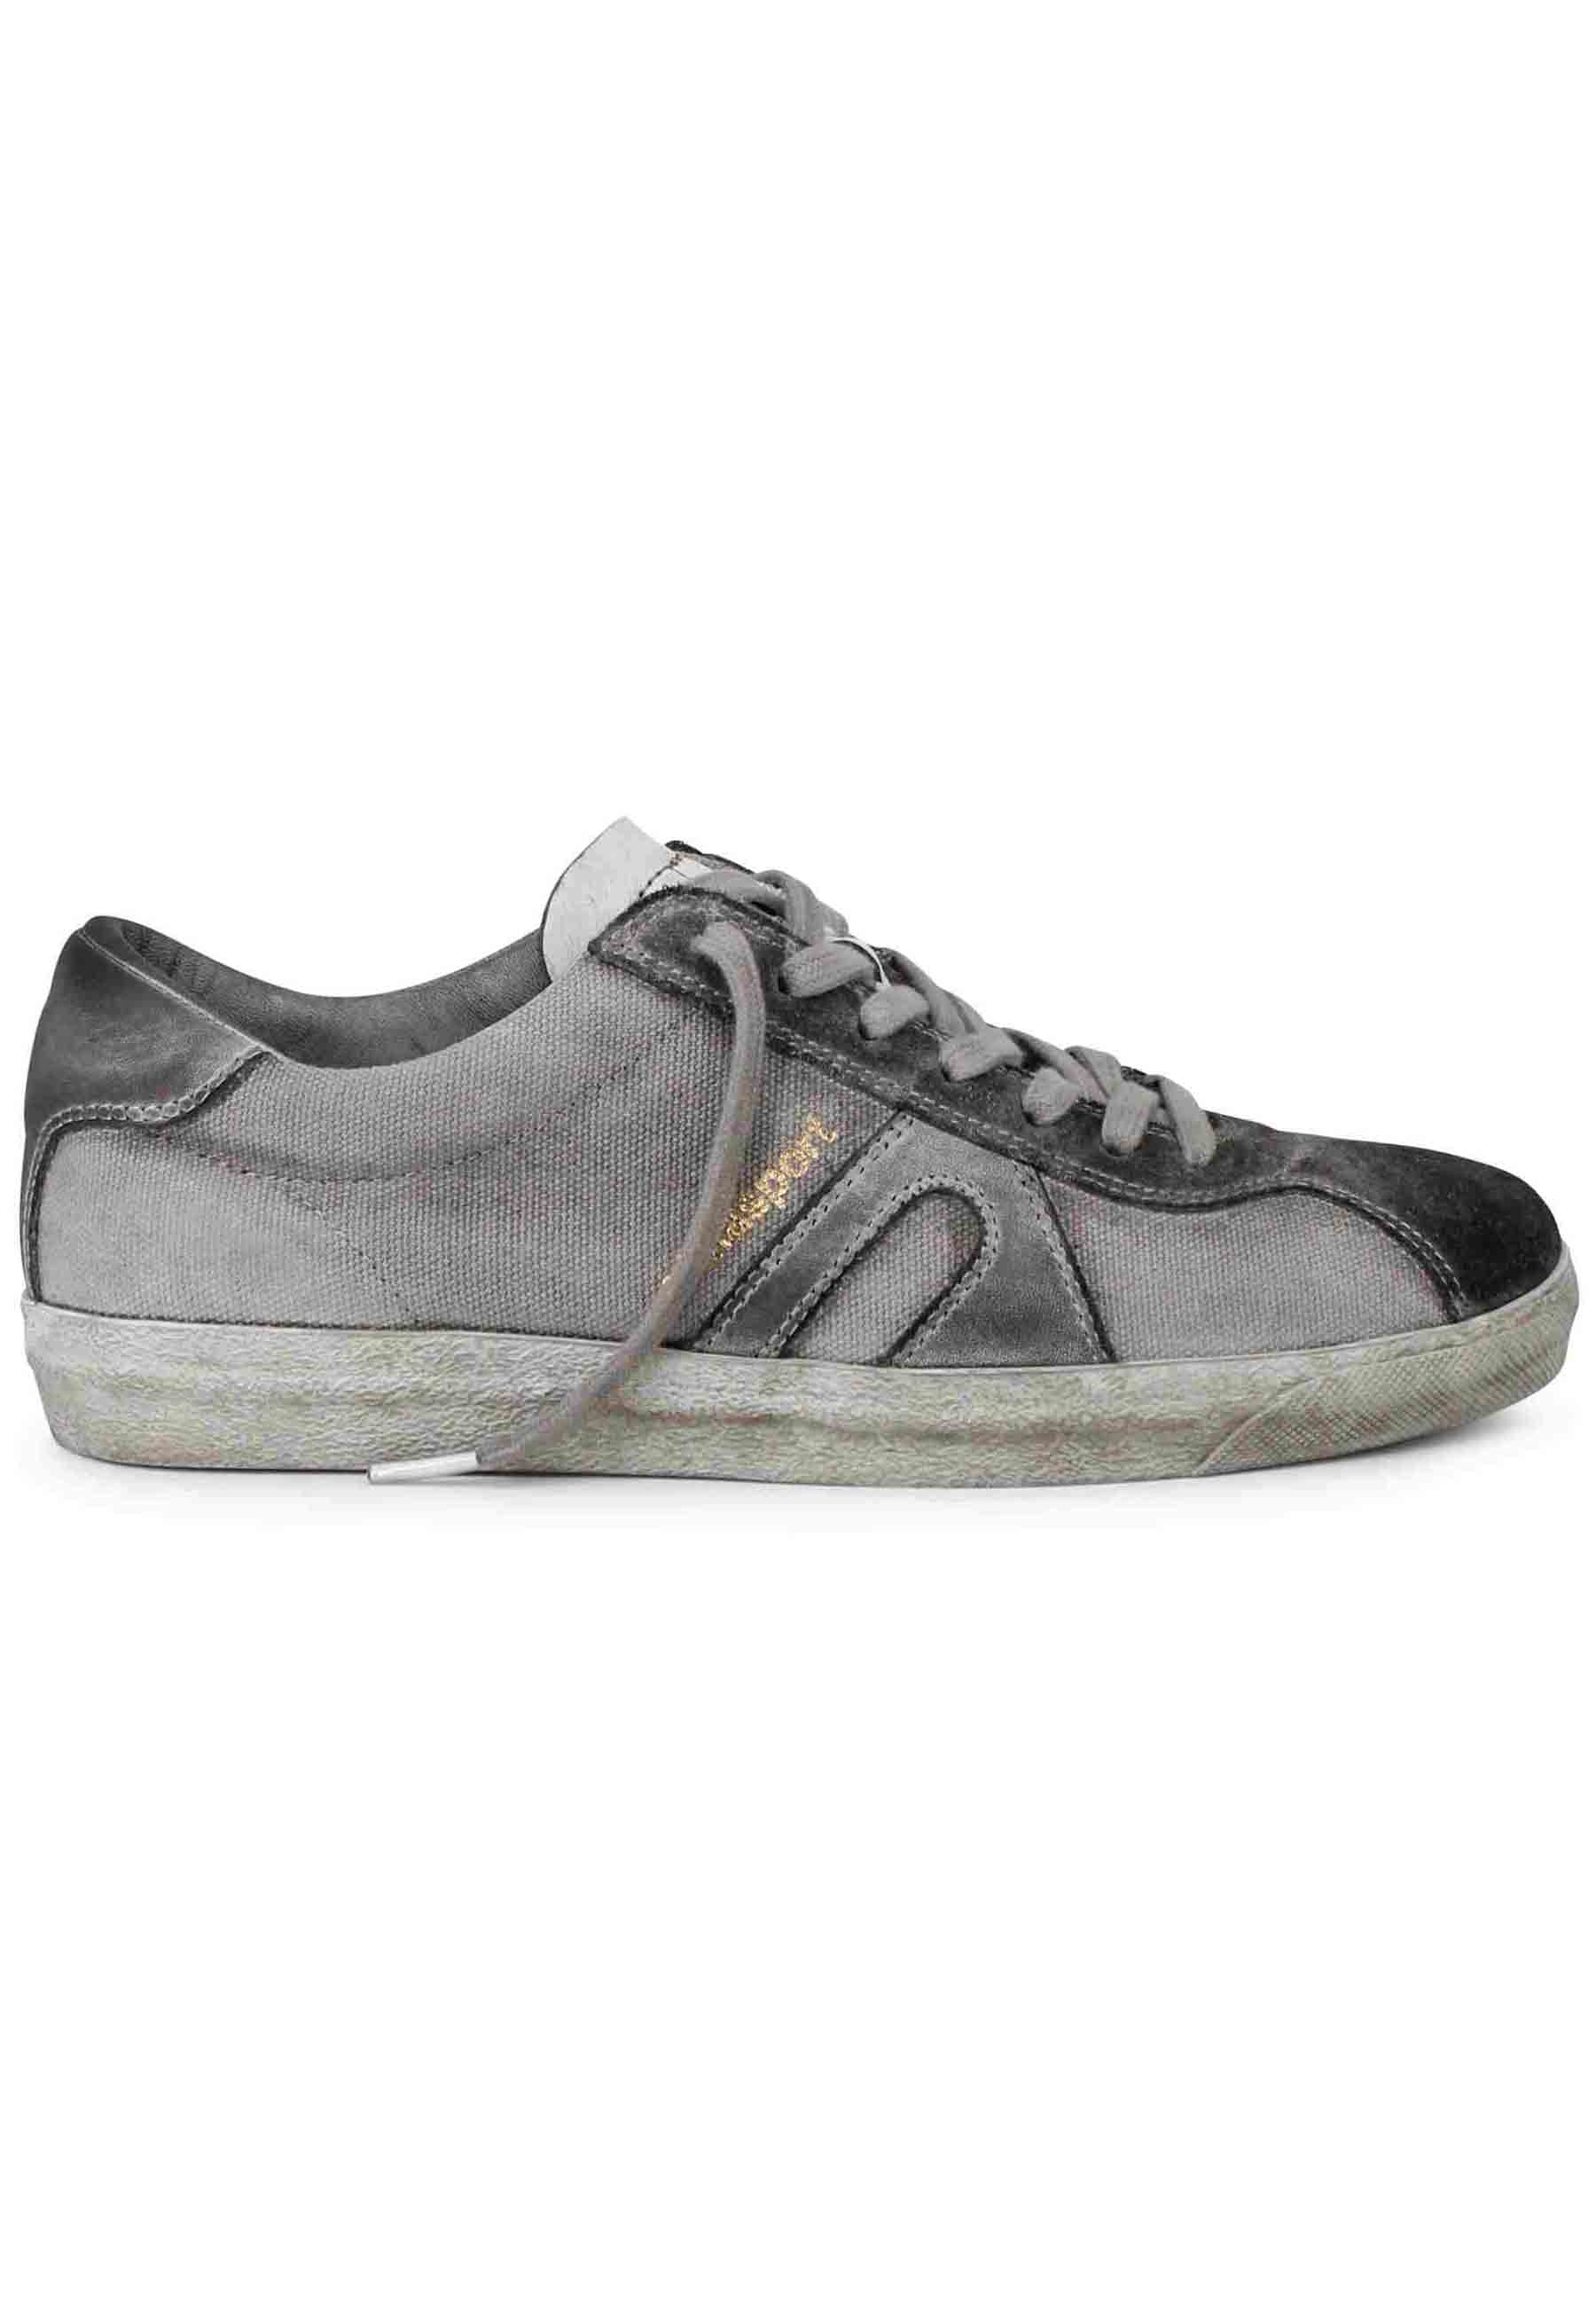 Sneakers uomo in canvas vintage grigio